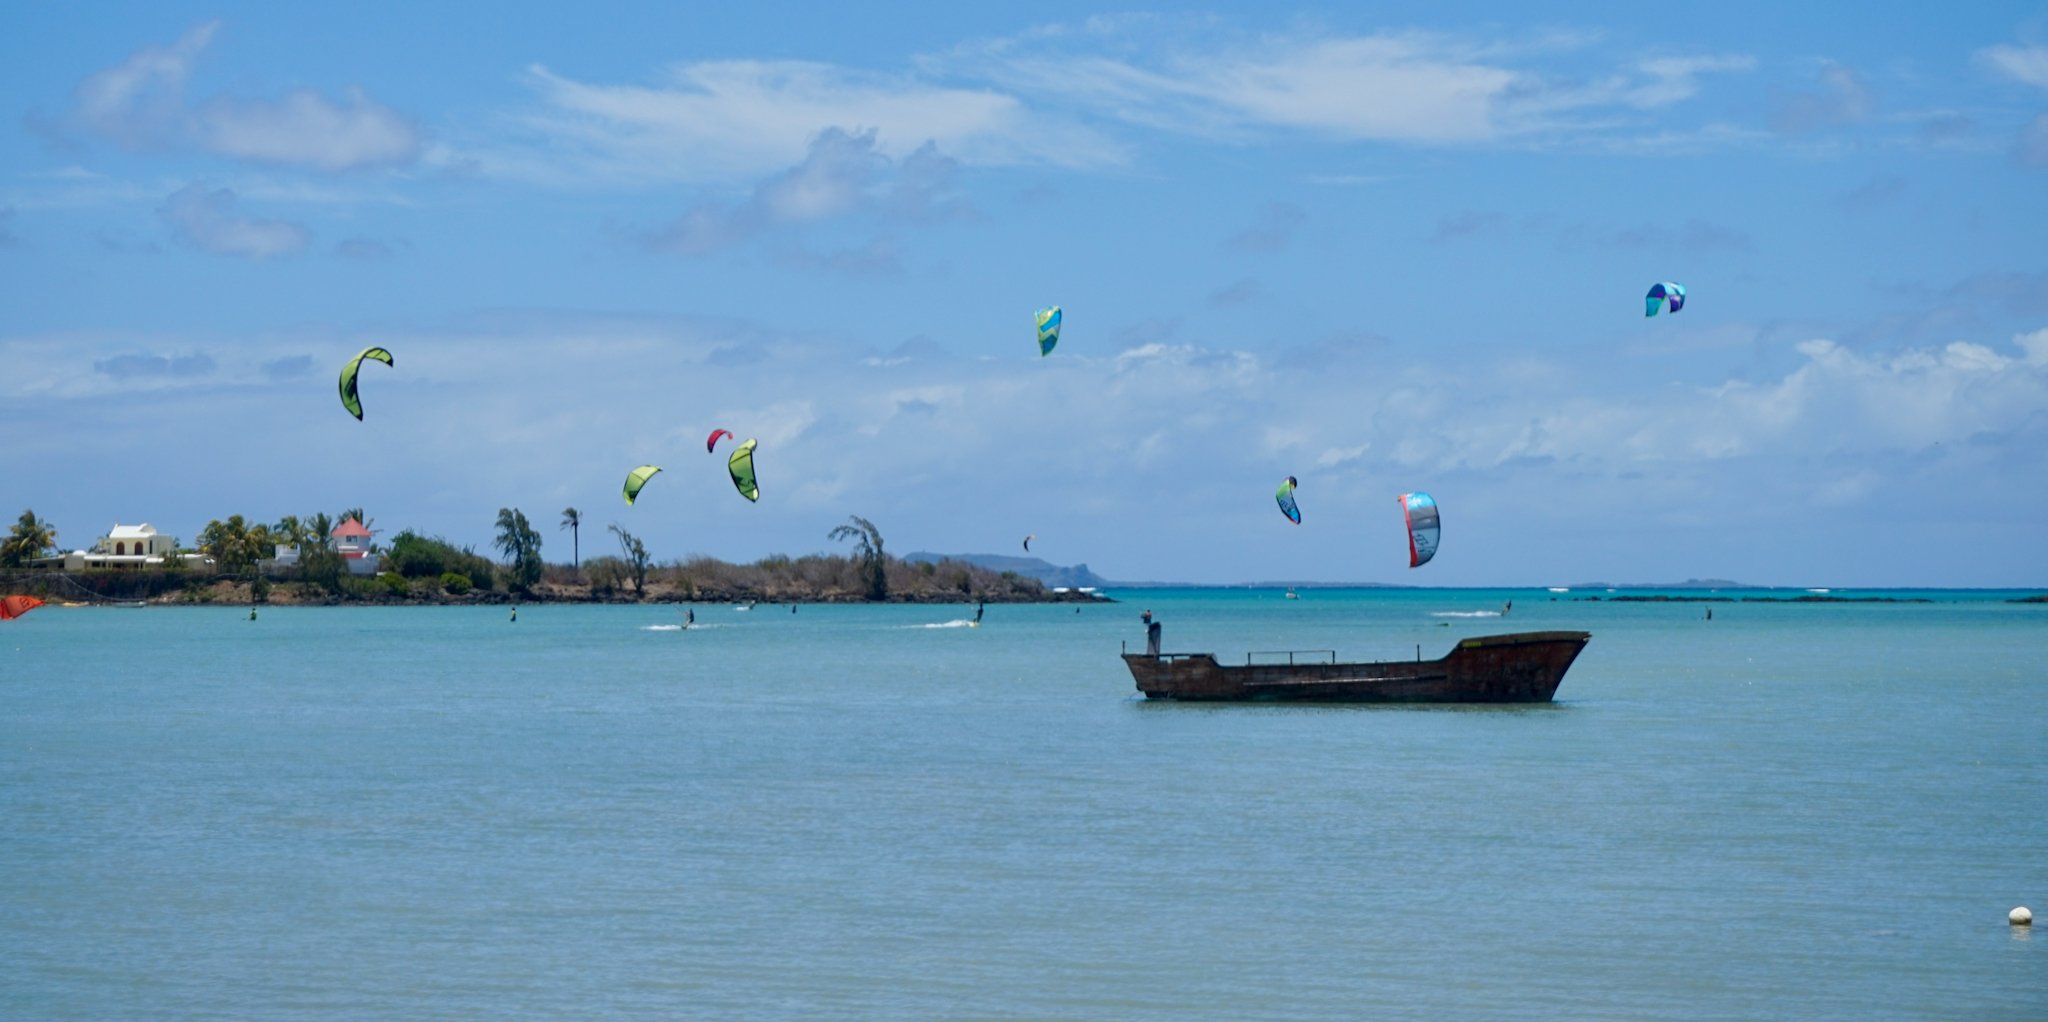 Kitesurfers at Anse La Raie